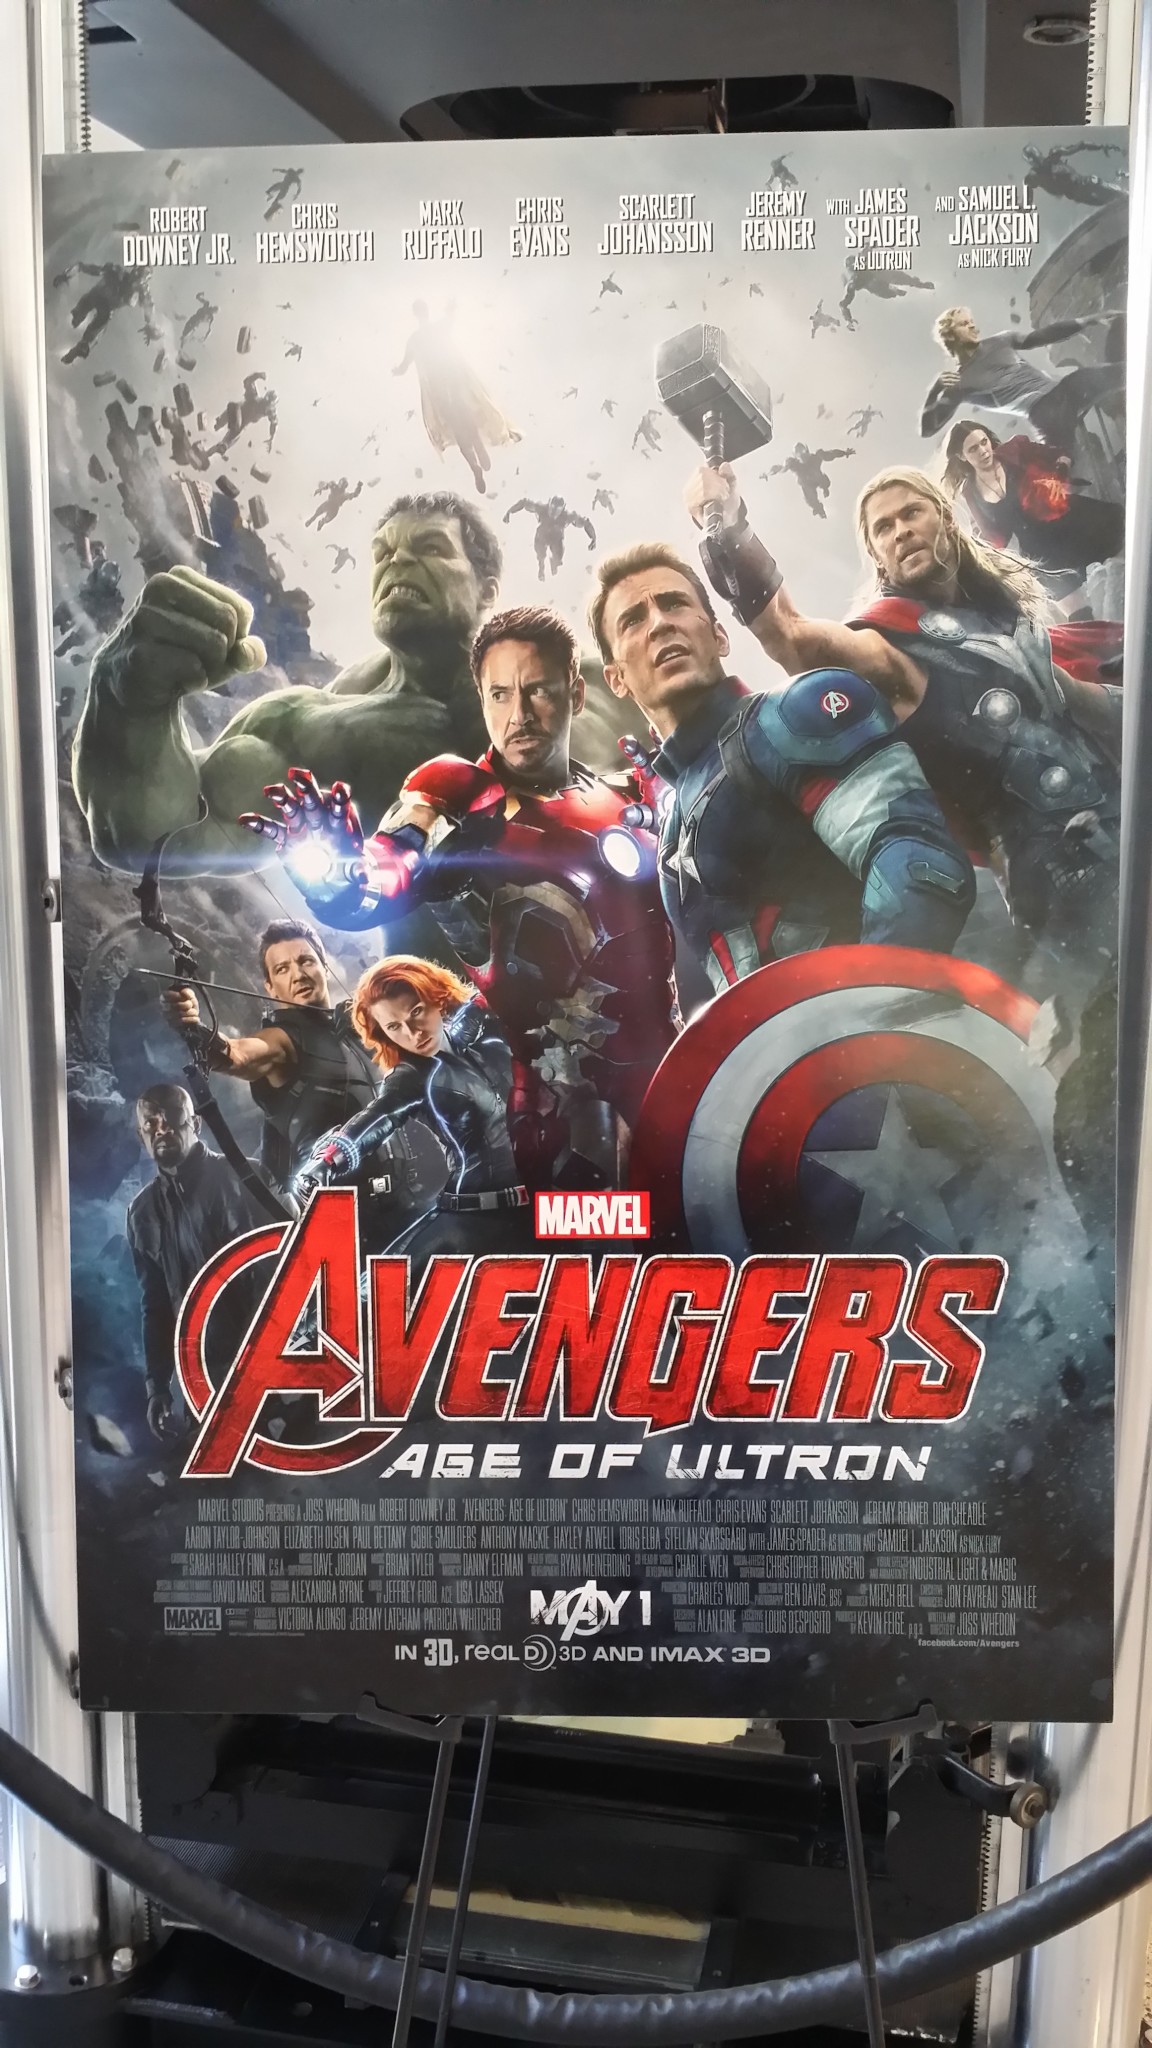 Avengers: Endgame Cast Gets Emotional in Blu-Ray Sneak Peek Video